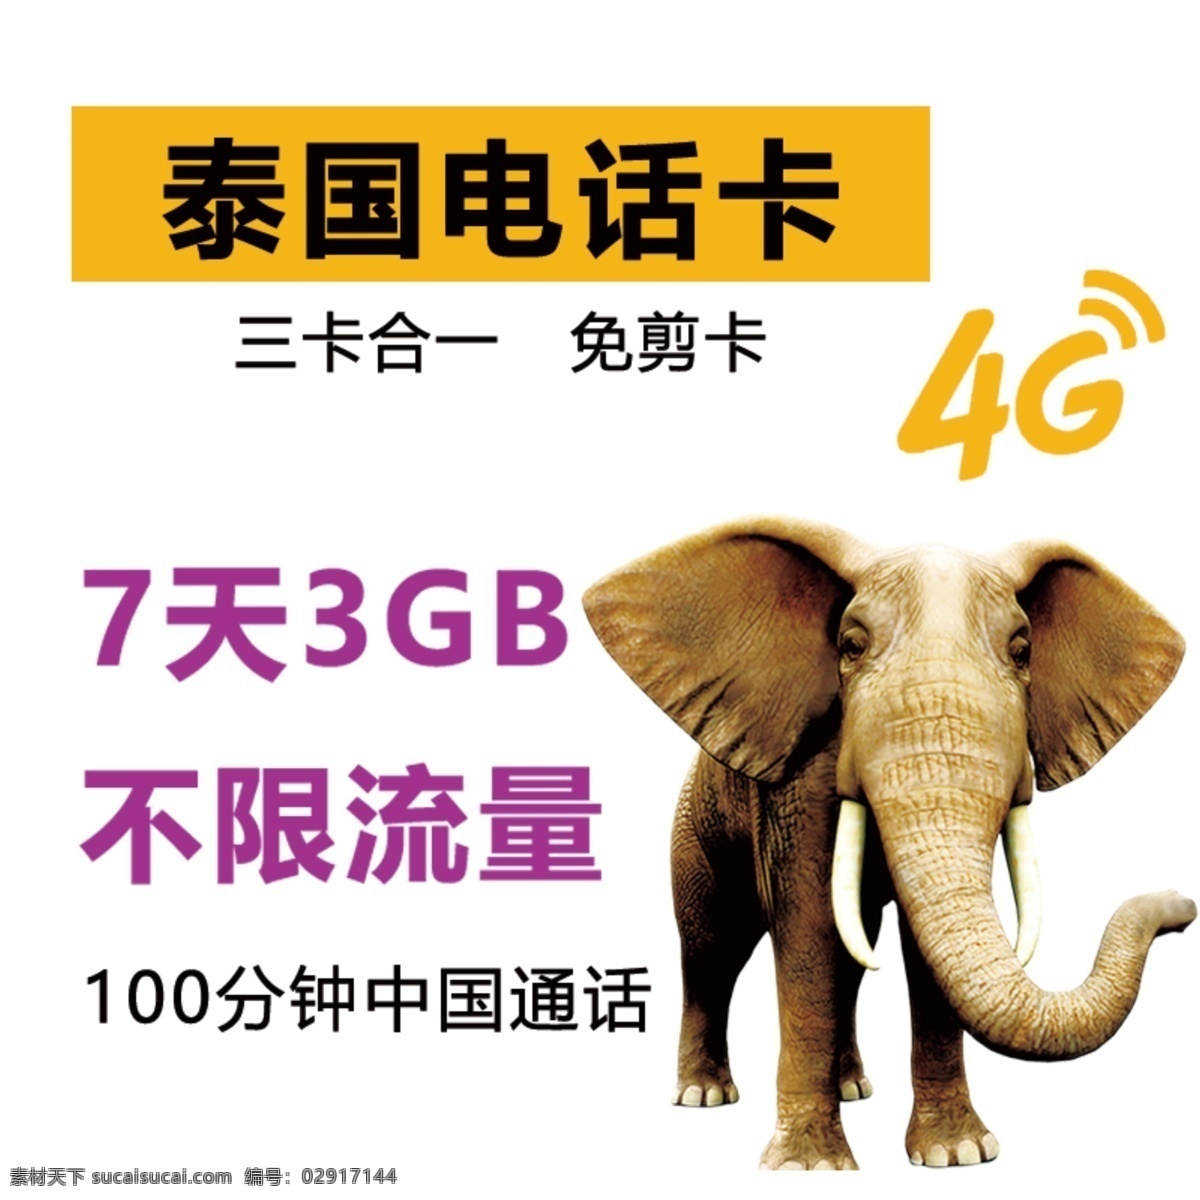 泰国电话卡 4g网络 泰国 大象 电话卡 充值卡 流量卡 泰国旅游 主图 淘宝主图